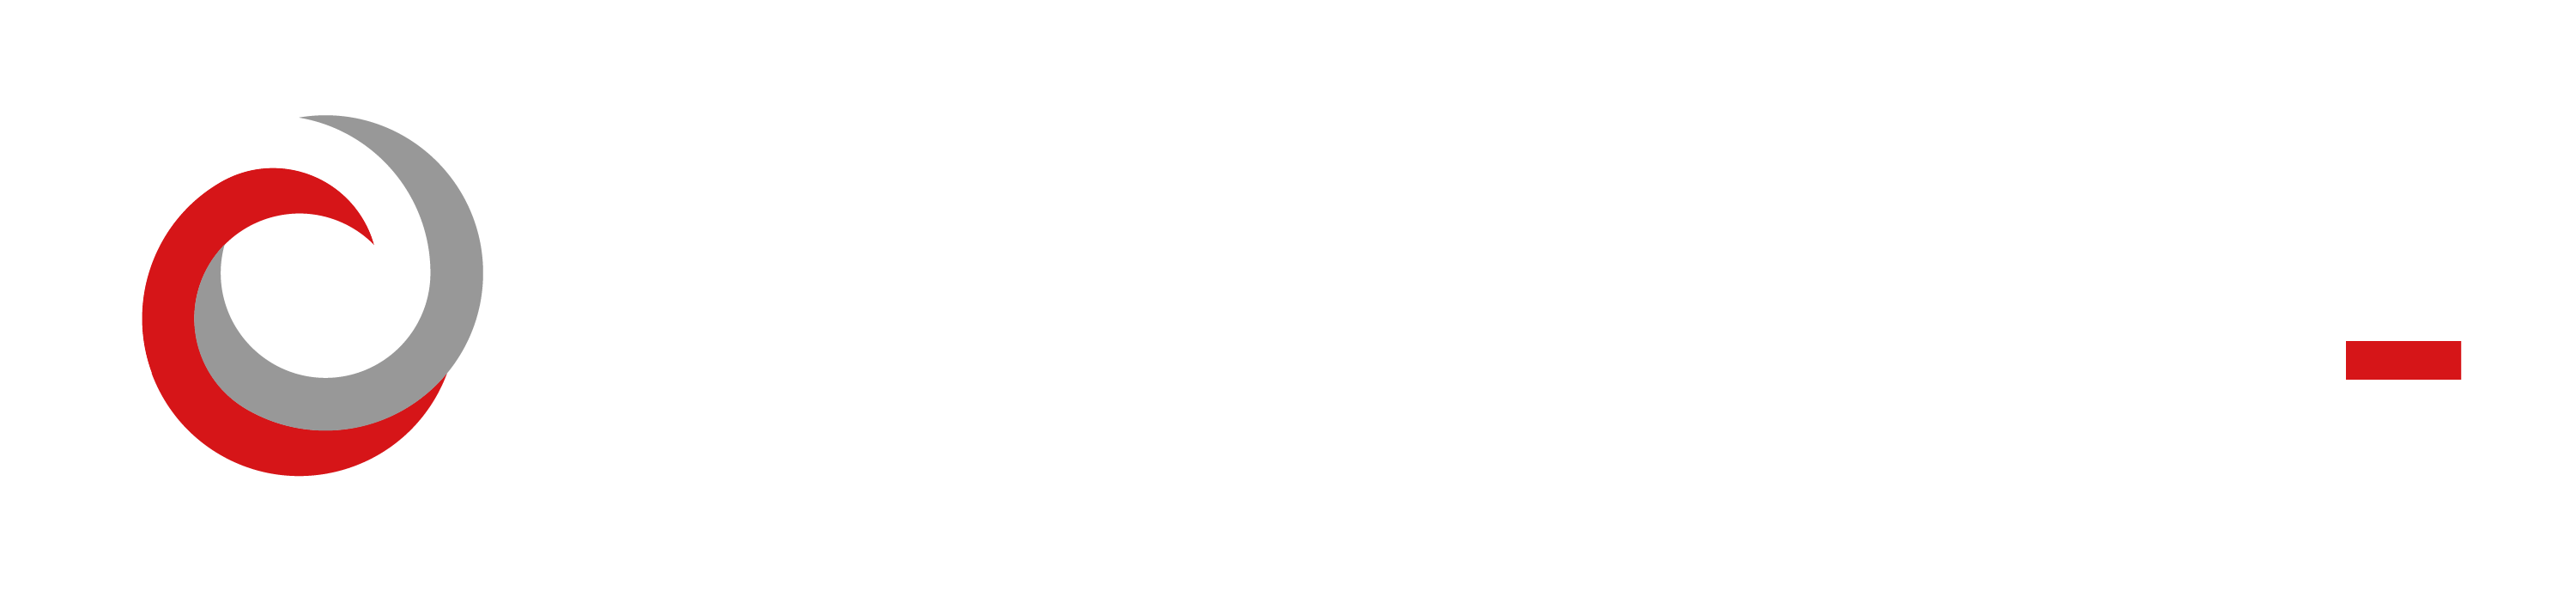 CyberSolutions logo